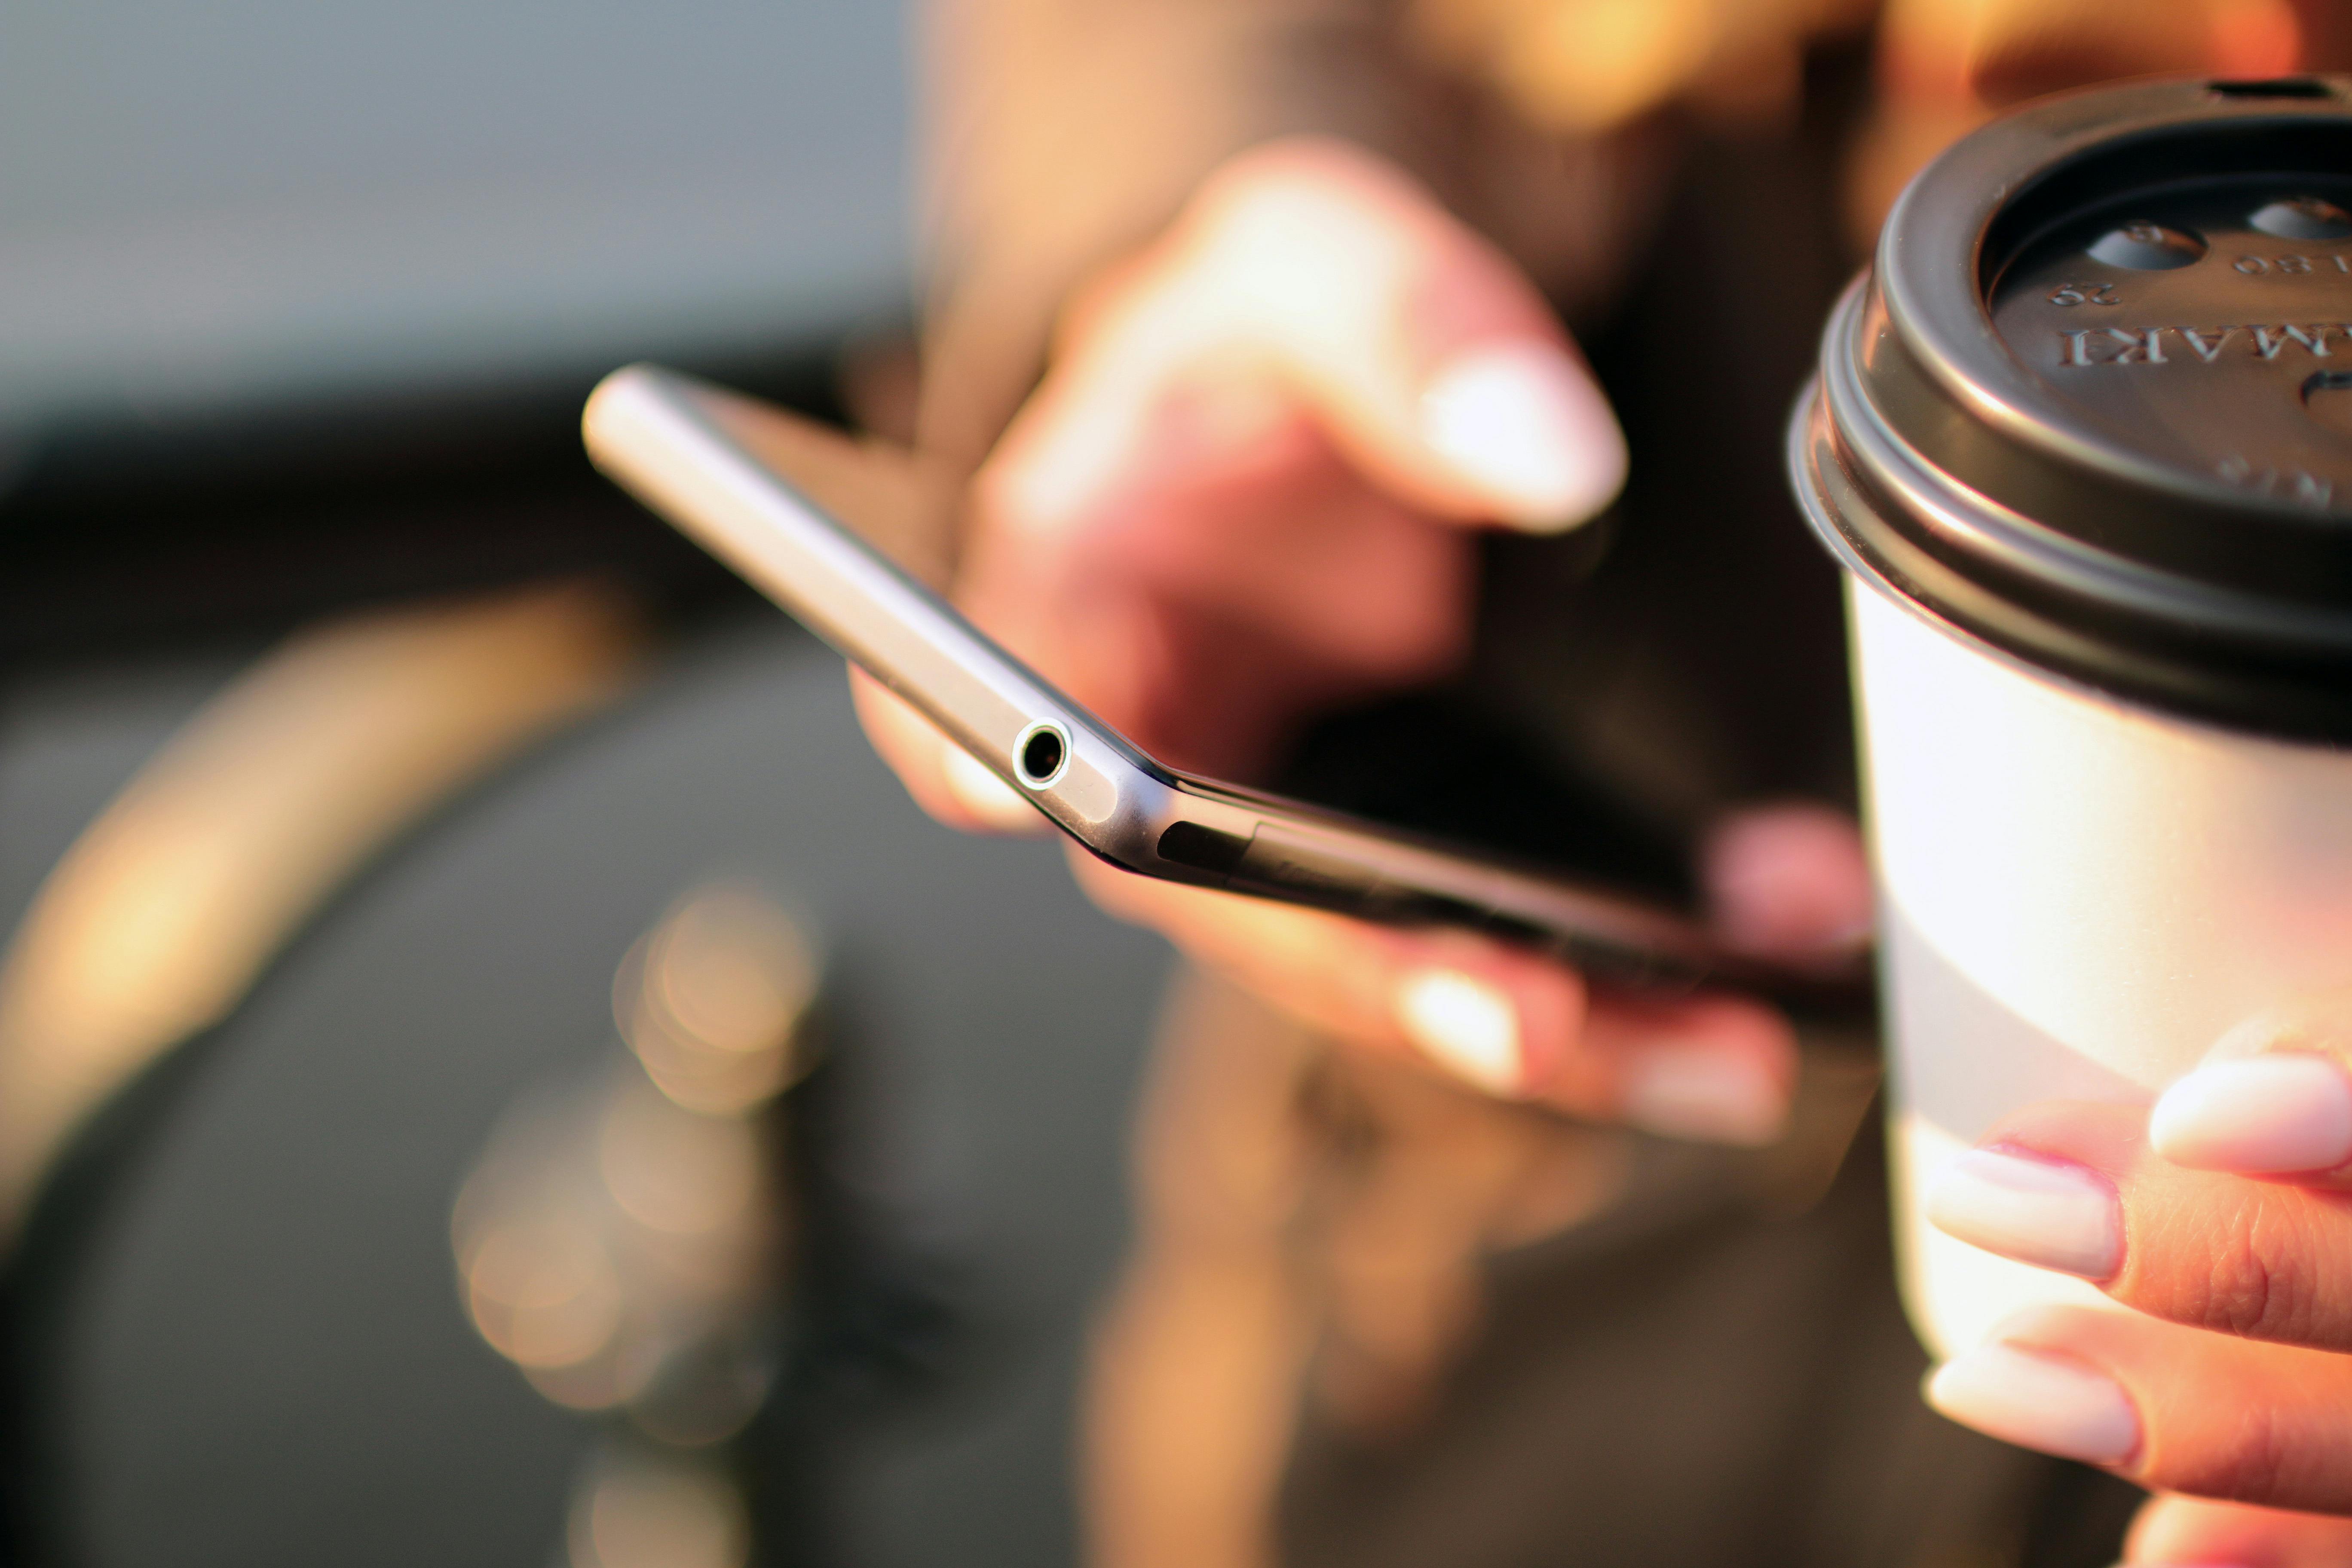 Nur zu Illustrationszwecken. Frau liest Text auf ihrem Telefon, während sie Kaffee trinkt | Quelle: Pexels